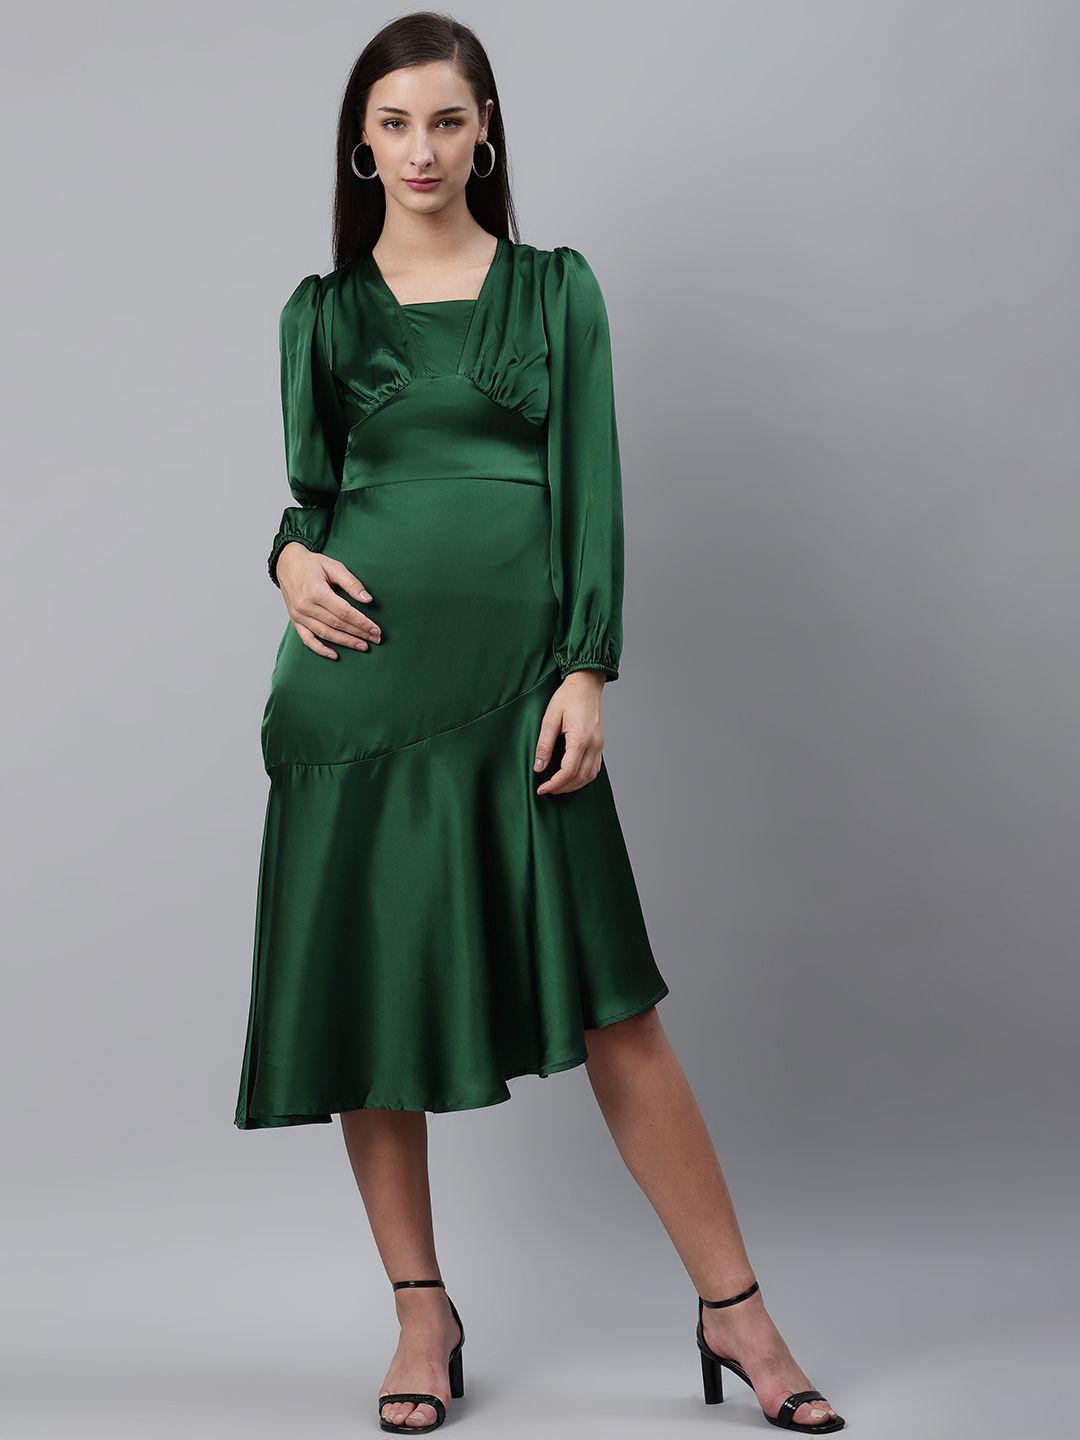 pluss-green-pleated-solid-midi-a-line-dress